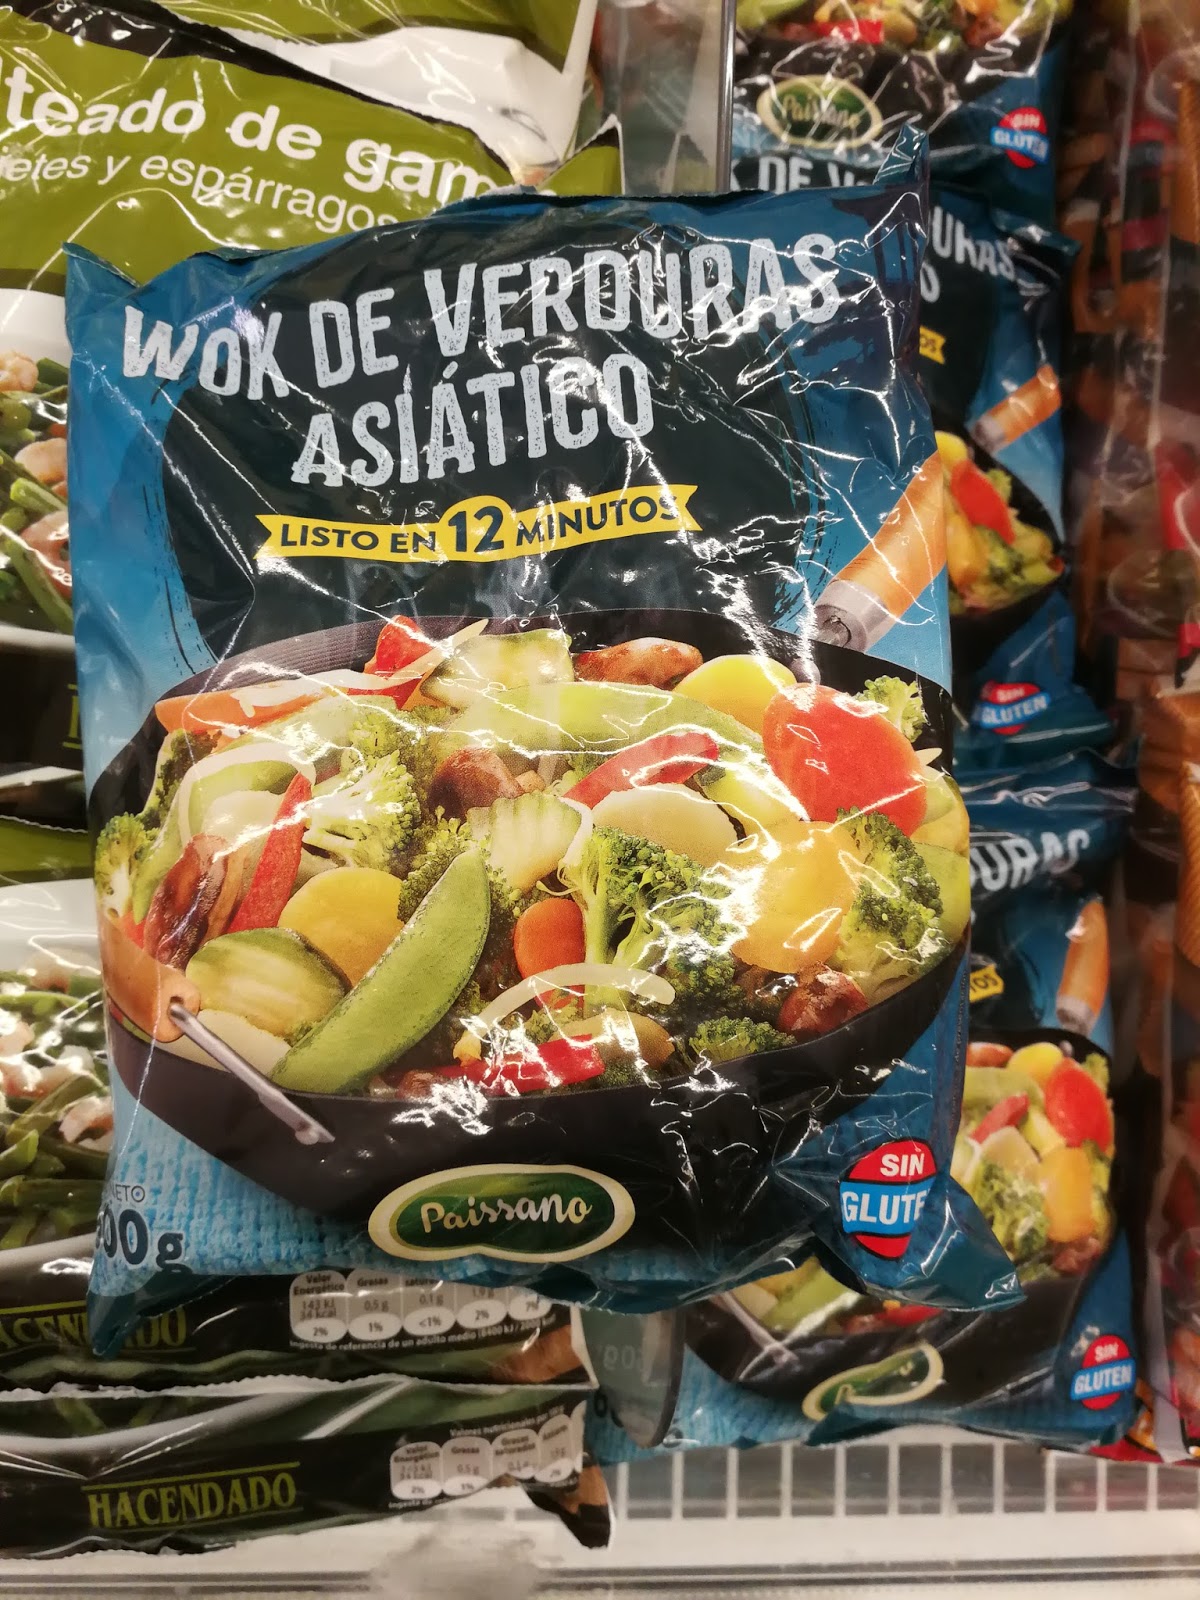 Wok de verduras asiático